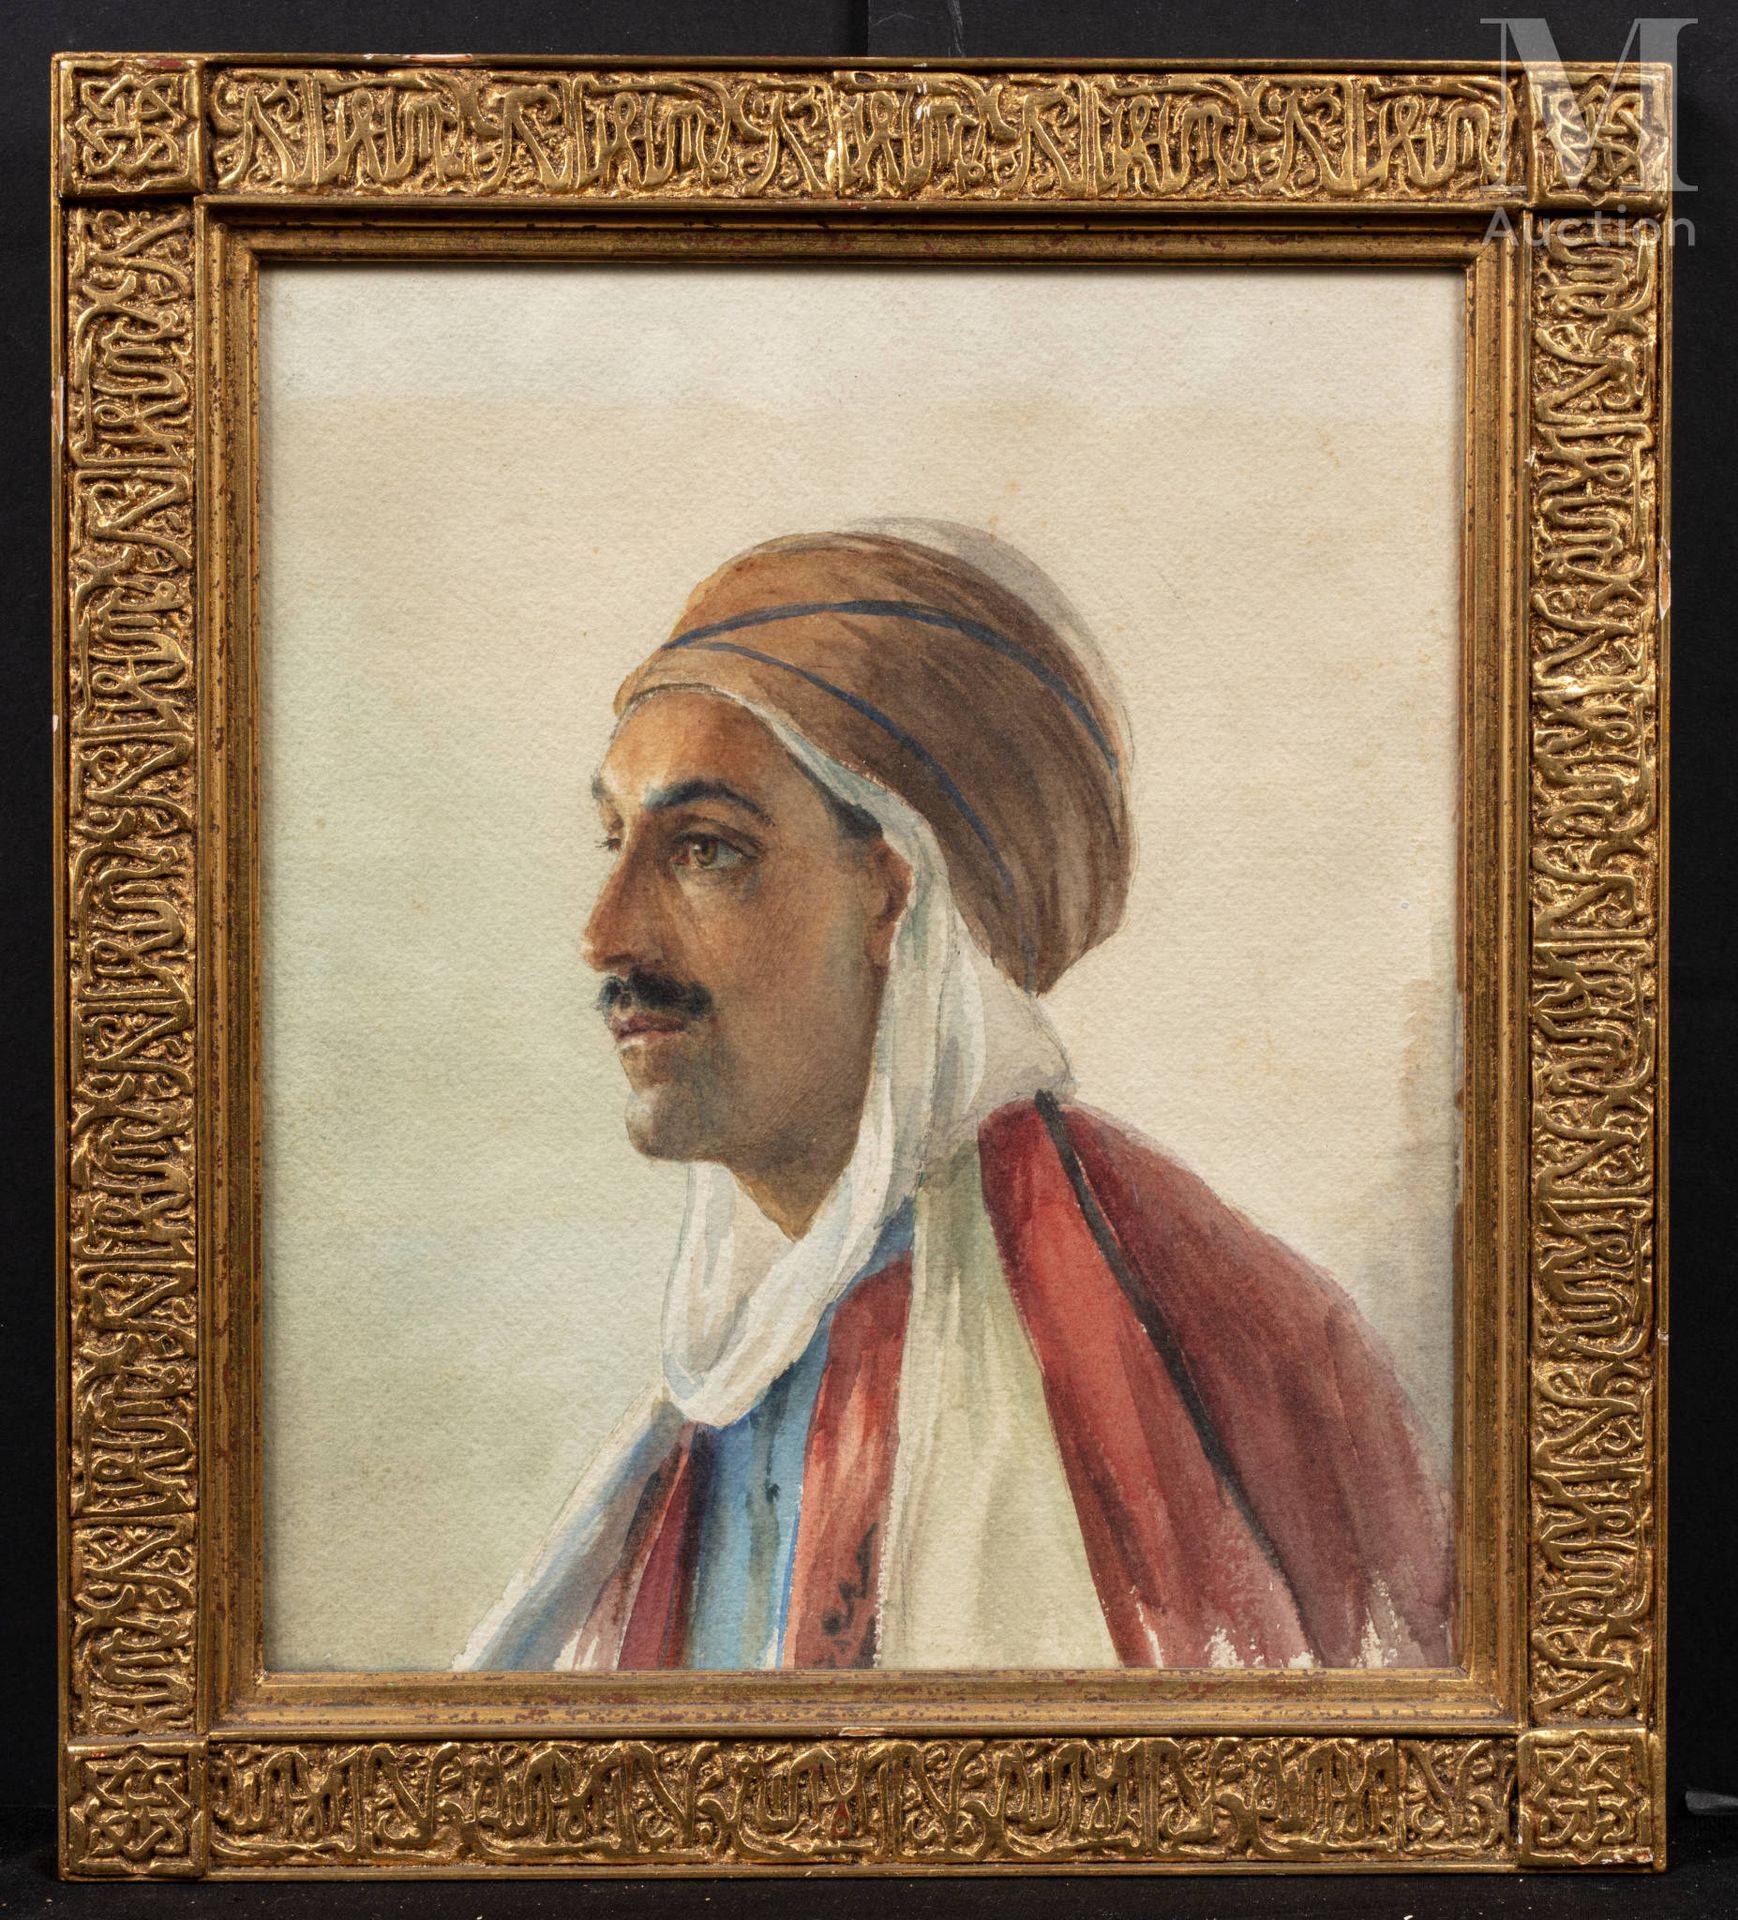 D'ANGLADE (1854 -1919) Retrato de un hombre con turbante

Acuarela

32 x 27 cm 
&hellip;